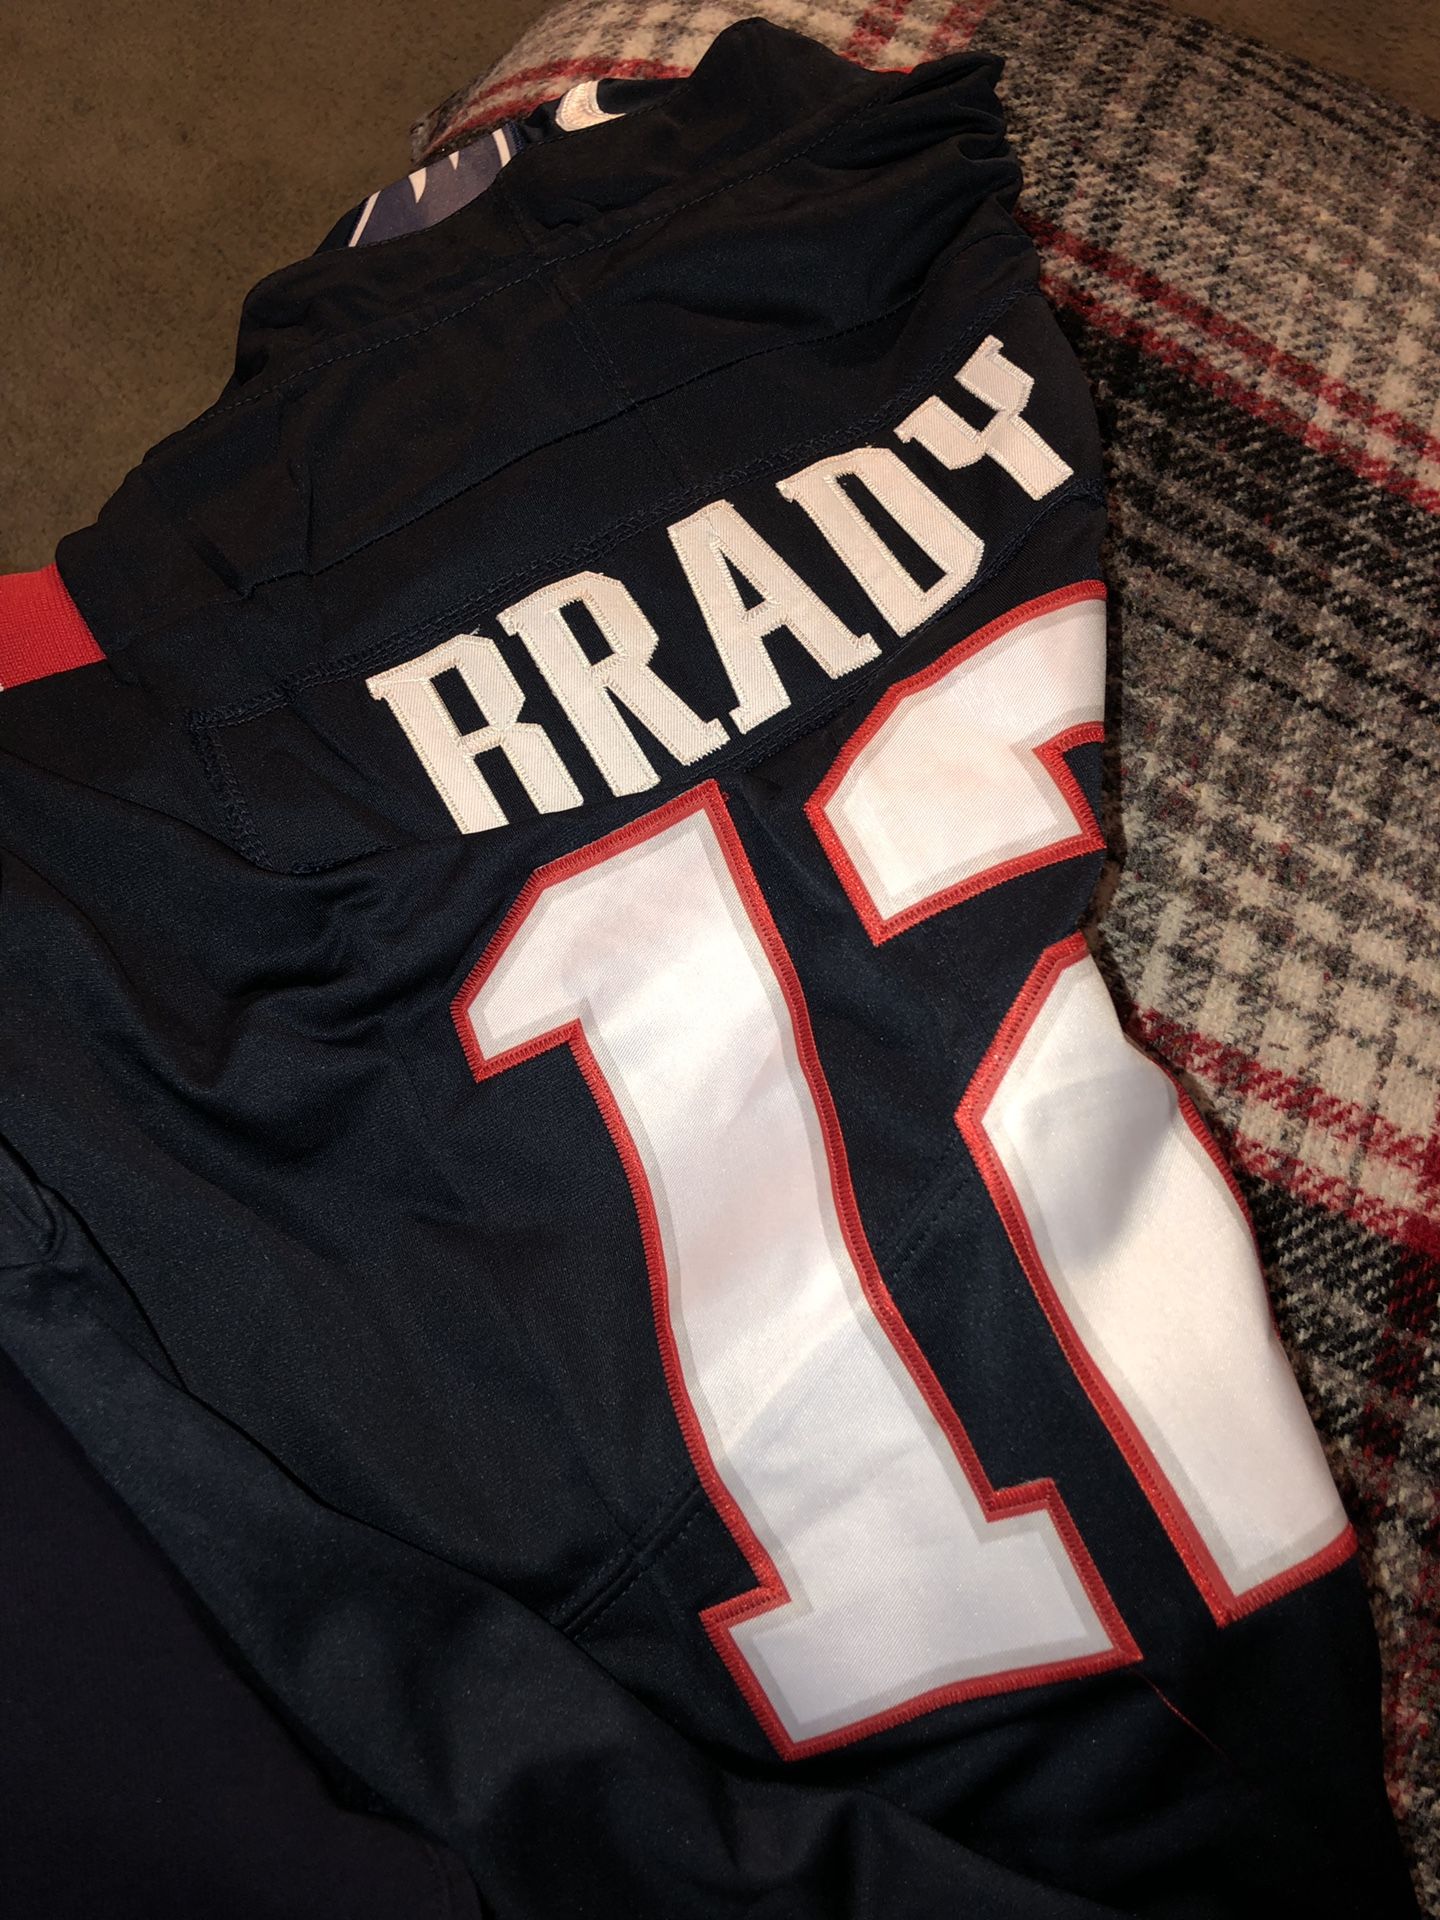 Nike Tom Brady Patriots Jersey size M.